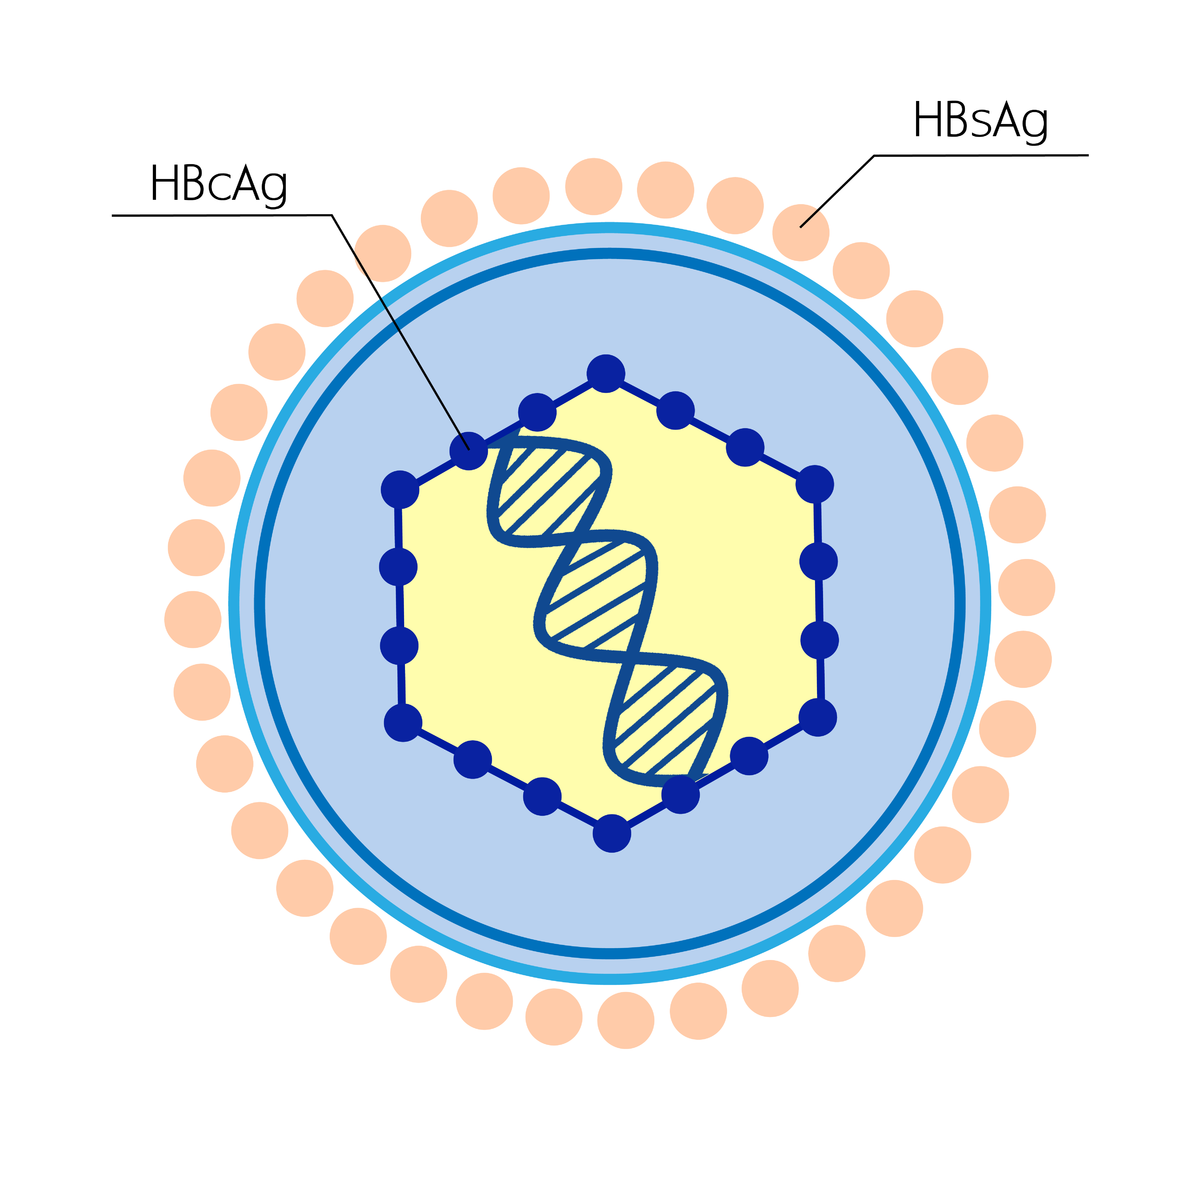 HBS антиген гепатита b. Вирус гепатита б HBSAG. Антигенная структура вируса гепатита в (HBV). HBS антиген вируса гепатита в.